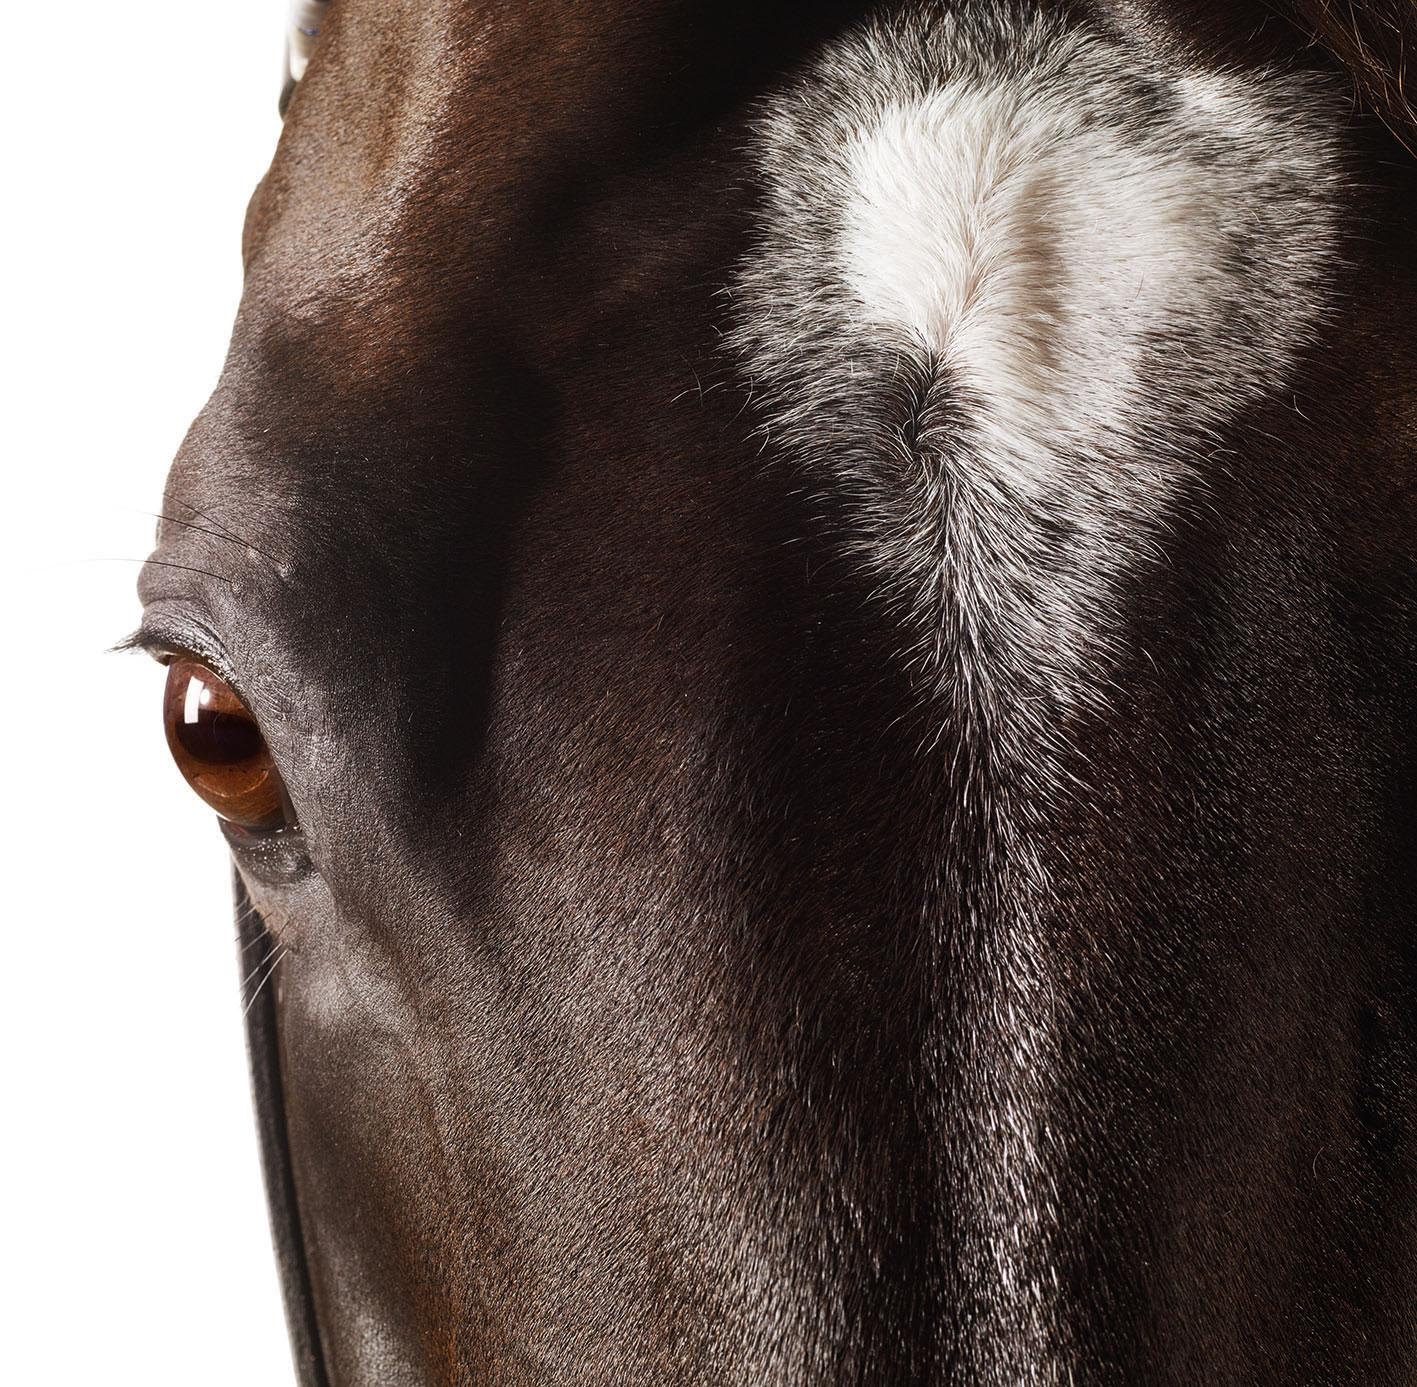 Medaglia d'Oro, Pferdekopf und Auge - Hengstporträt ungerahmt Druck auf Papier